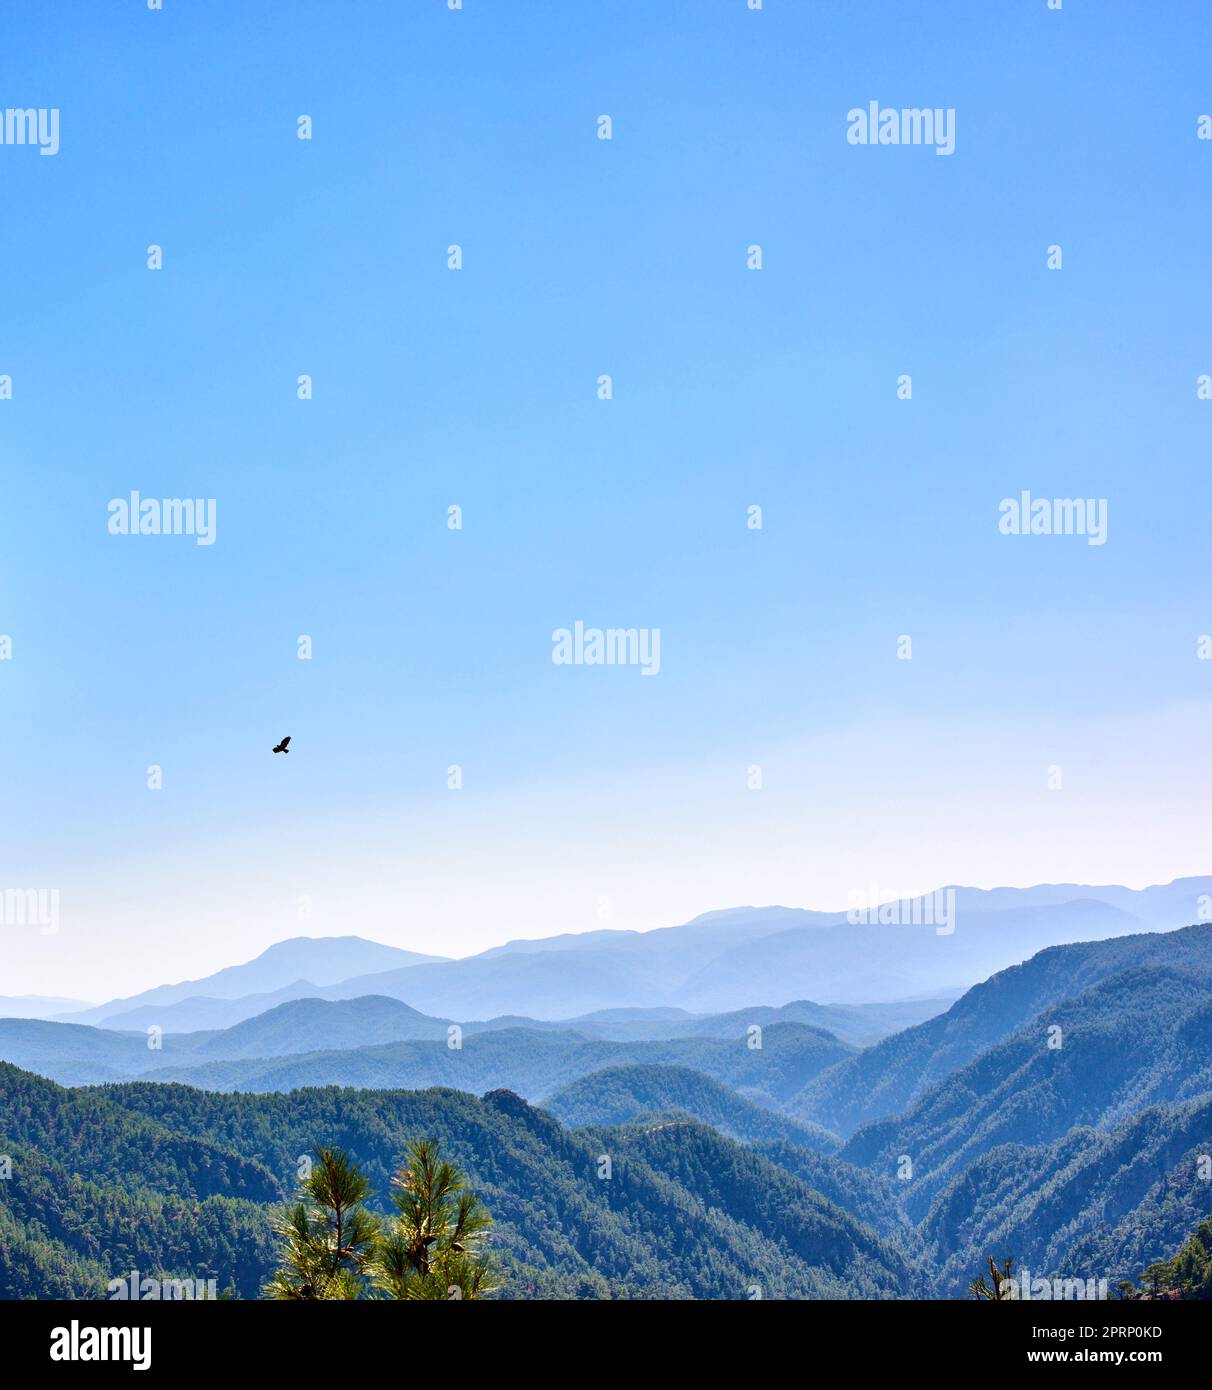 Kiefernwald im Berggebiet - Türkei. Ein Bild des Kiefernwaldes im Berggebiet in der Wester Türkei. Stockfoto